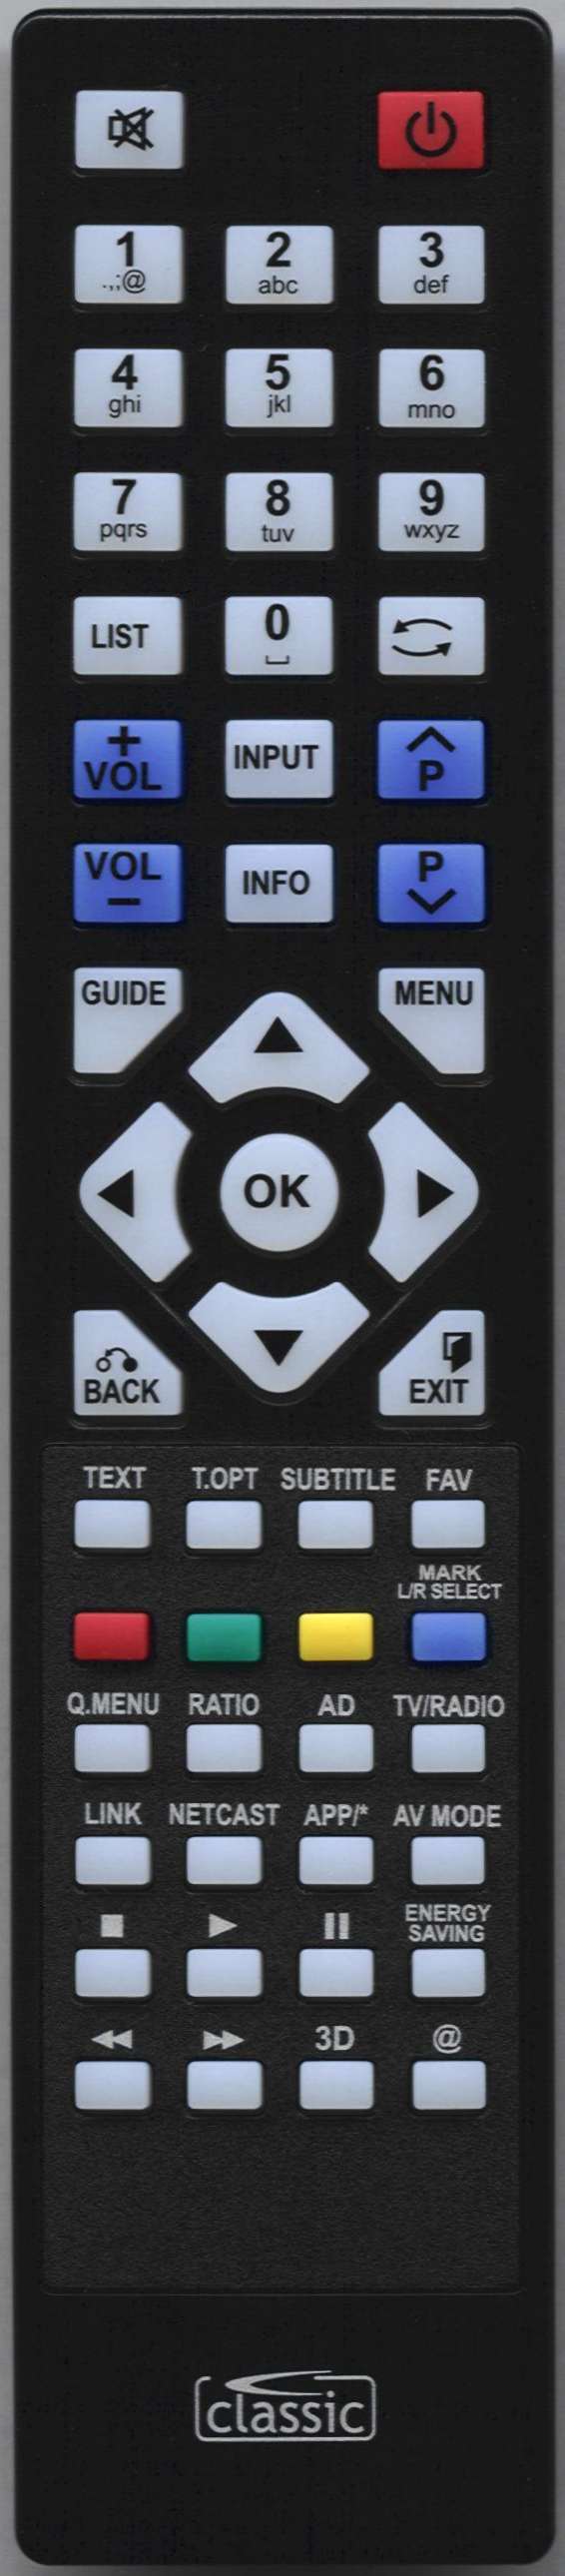 LG 19LE3300 Remote Control Alternative